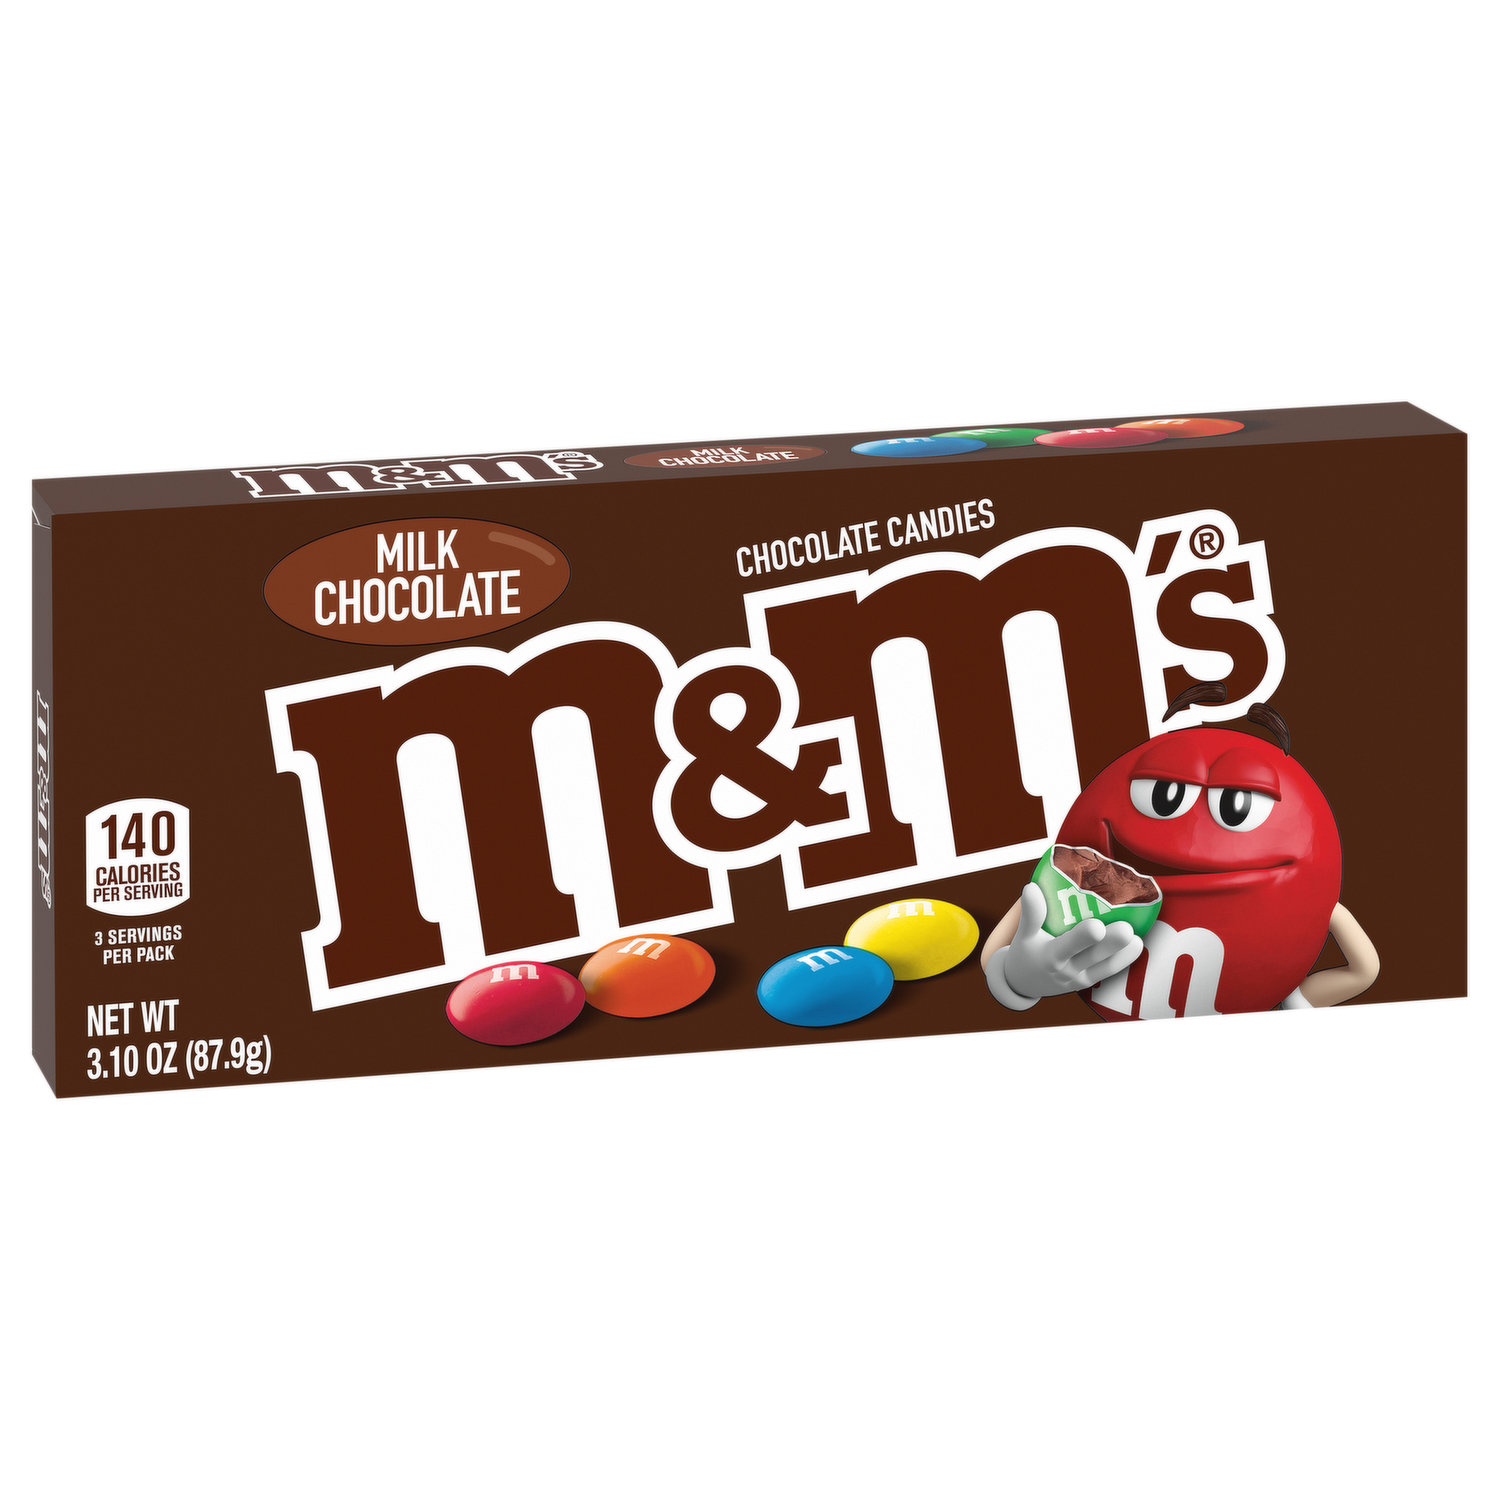 M&M's Milk Chocolate Candies Crunchy Cookie Sharing Size - 7.4 oz